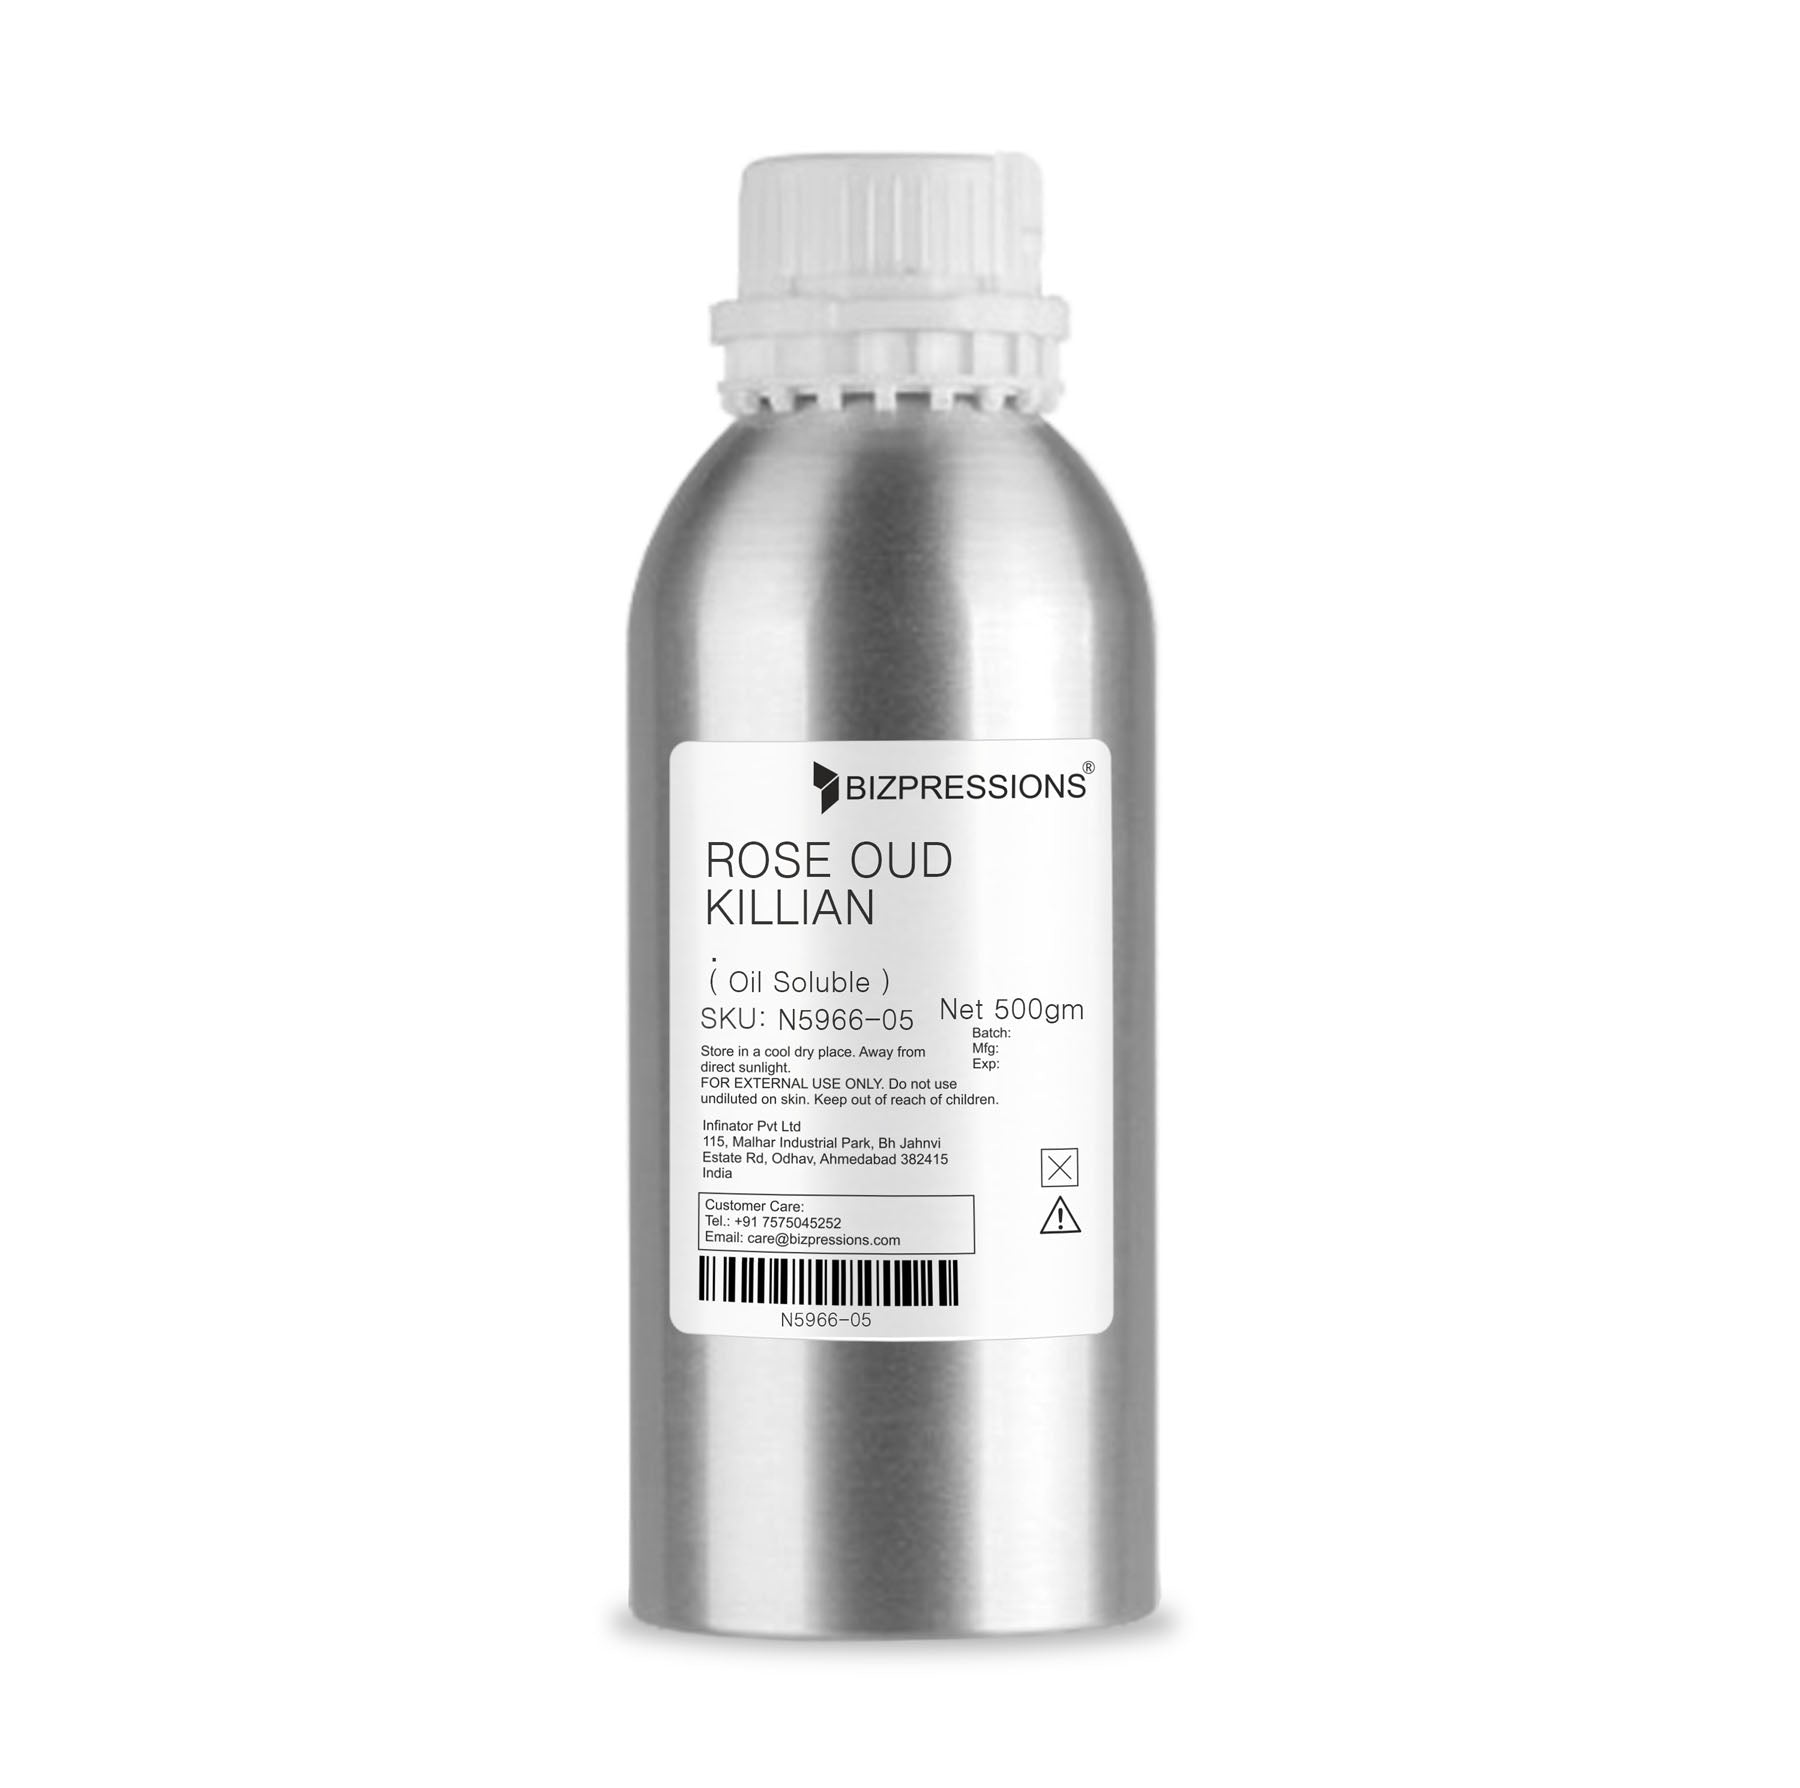 ROSE OUD KILLIAN - Fragrance ( Oil Soluble ) - 500 gm